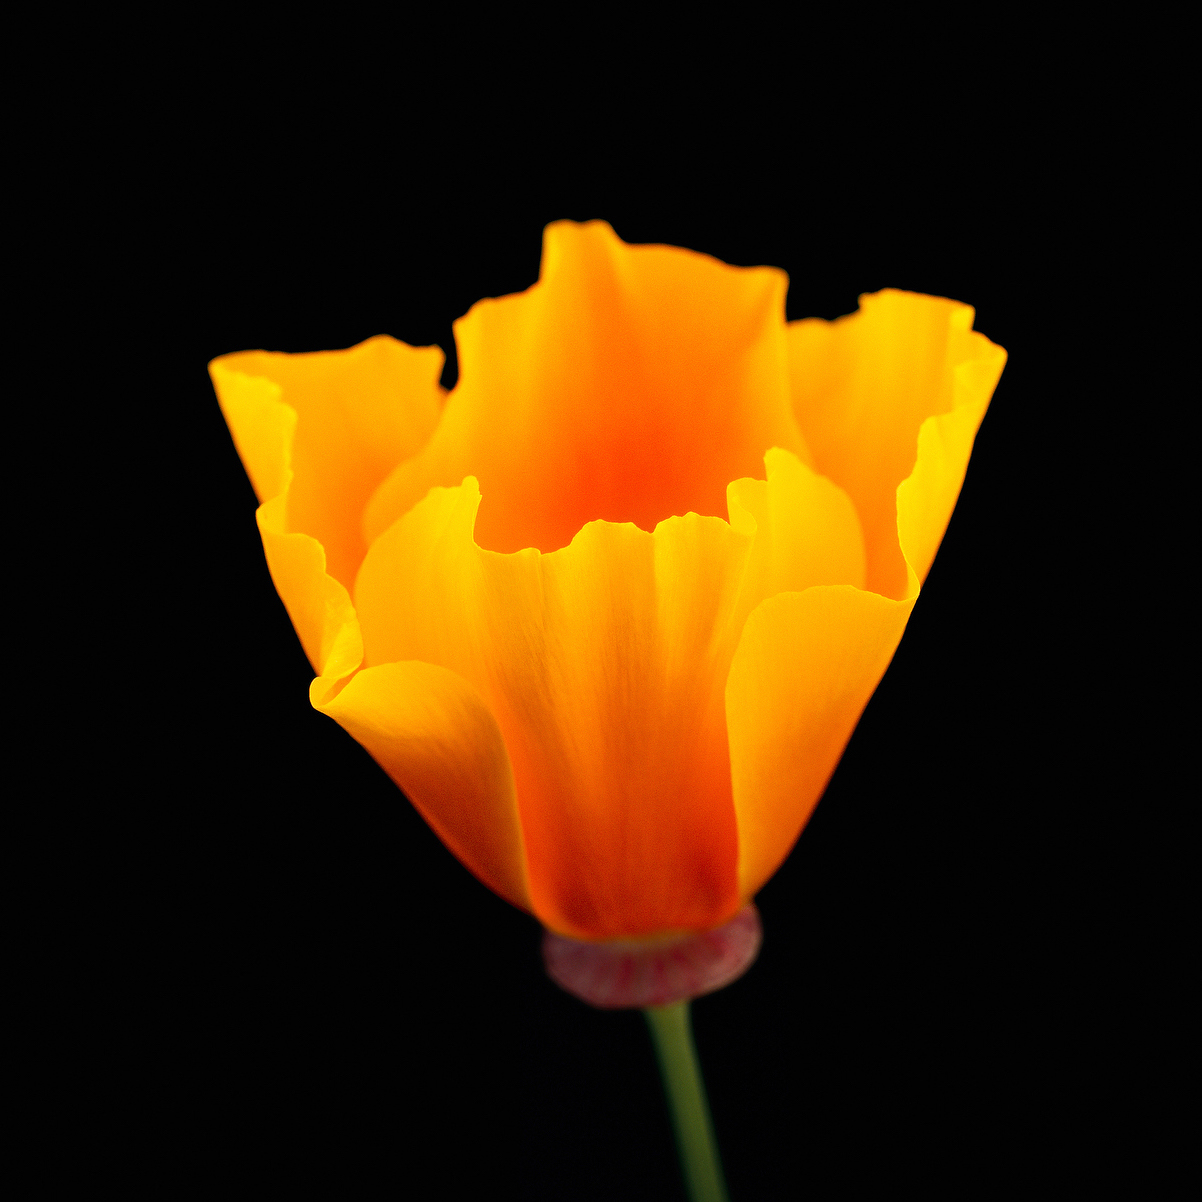 California Poppy<br />
Flower